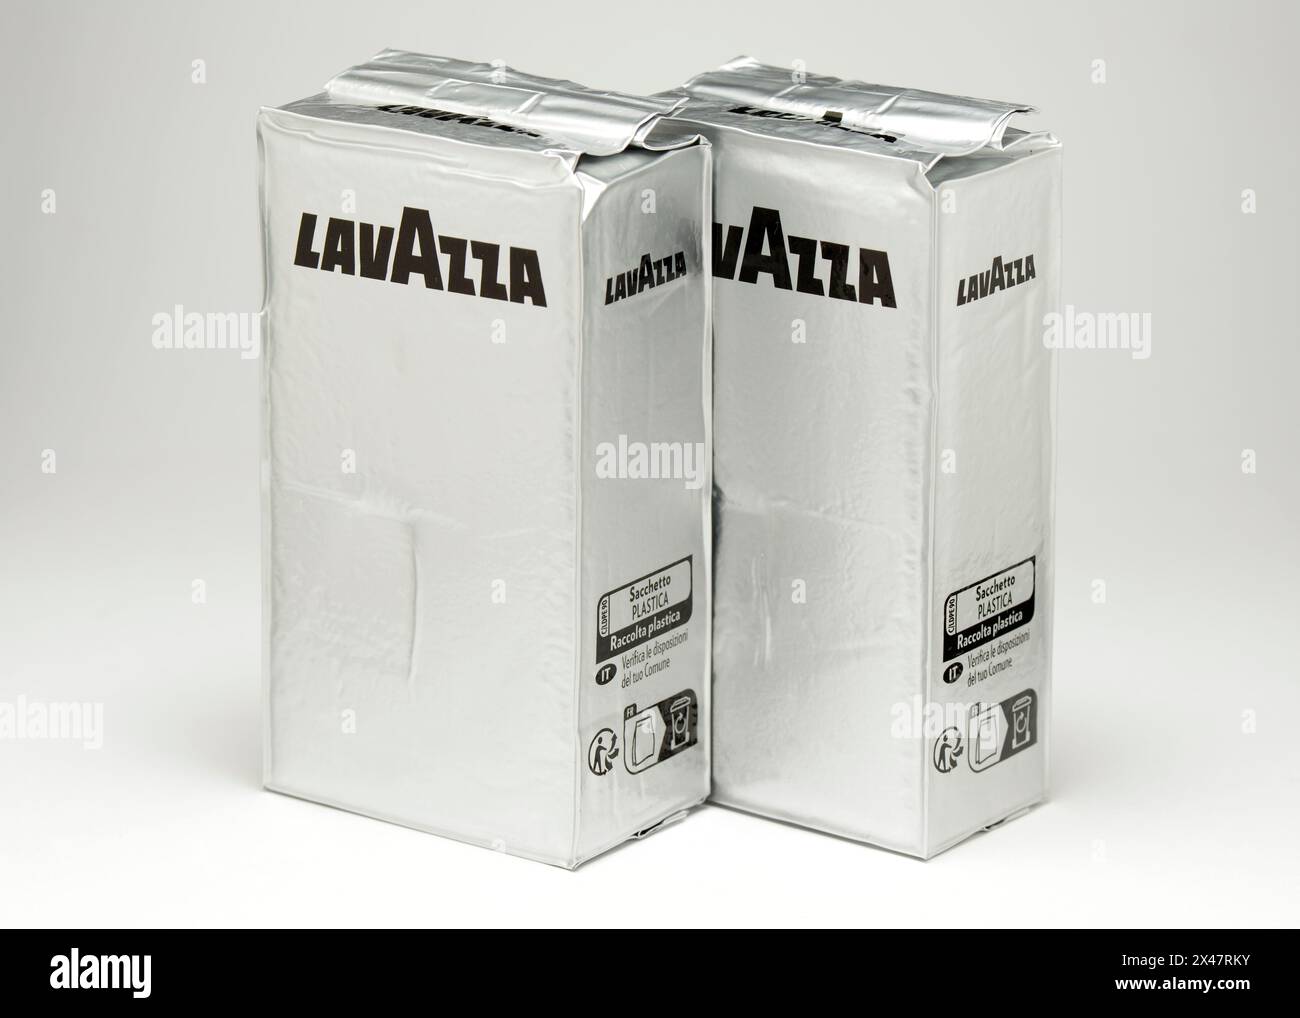 Lavazza café italien emballages recyclables isolés sur blanc comme concept d'emballage biodégradable d'économie circulaire Banque D'Images